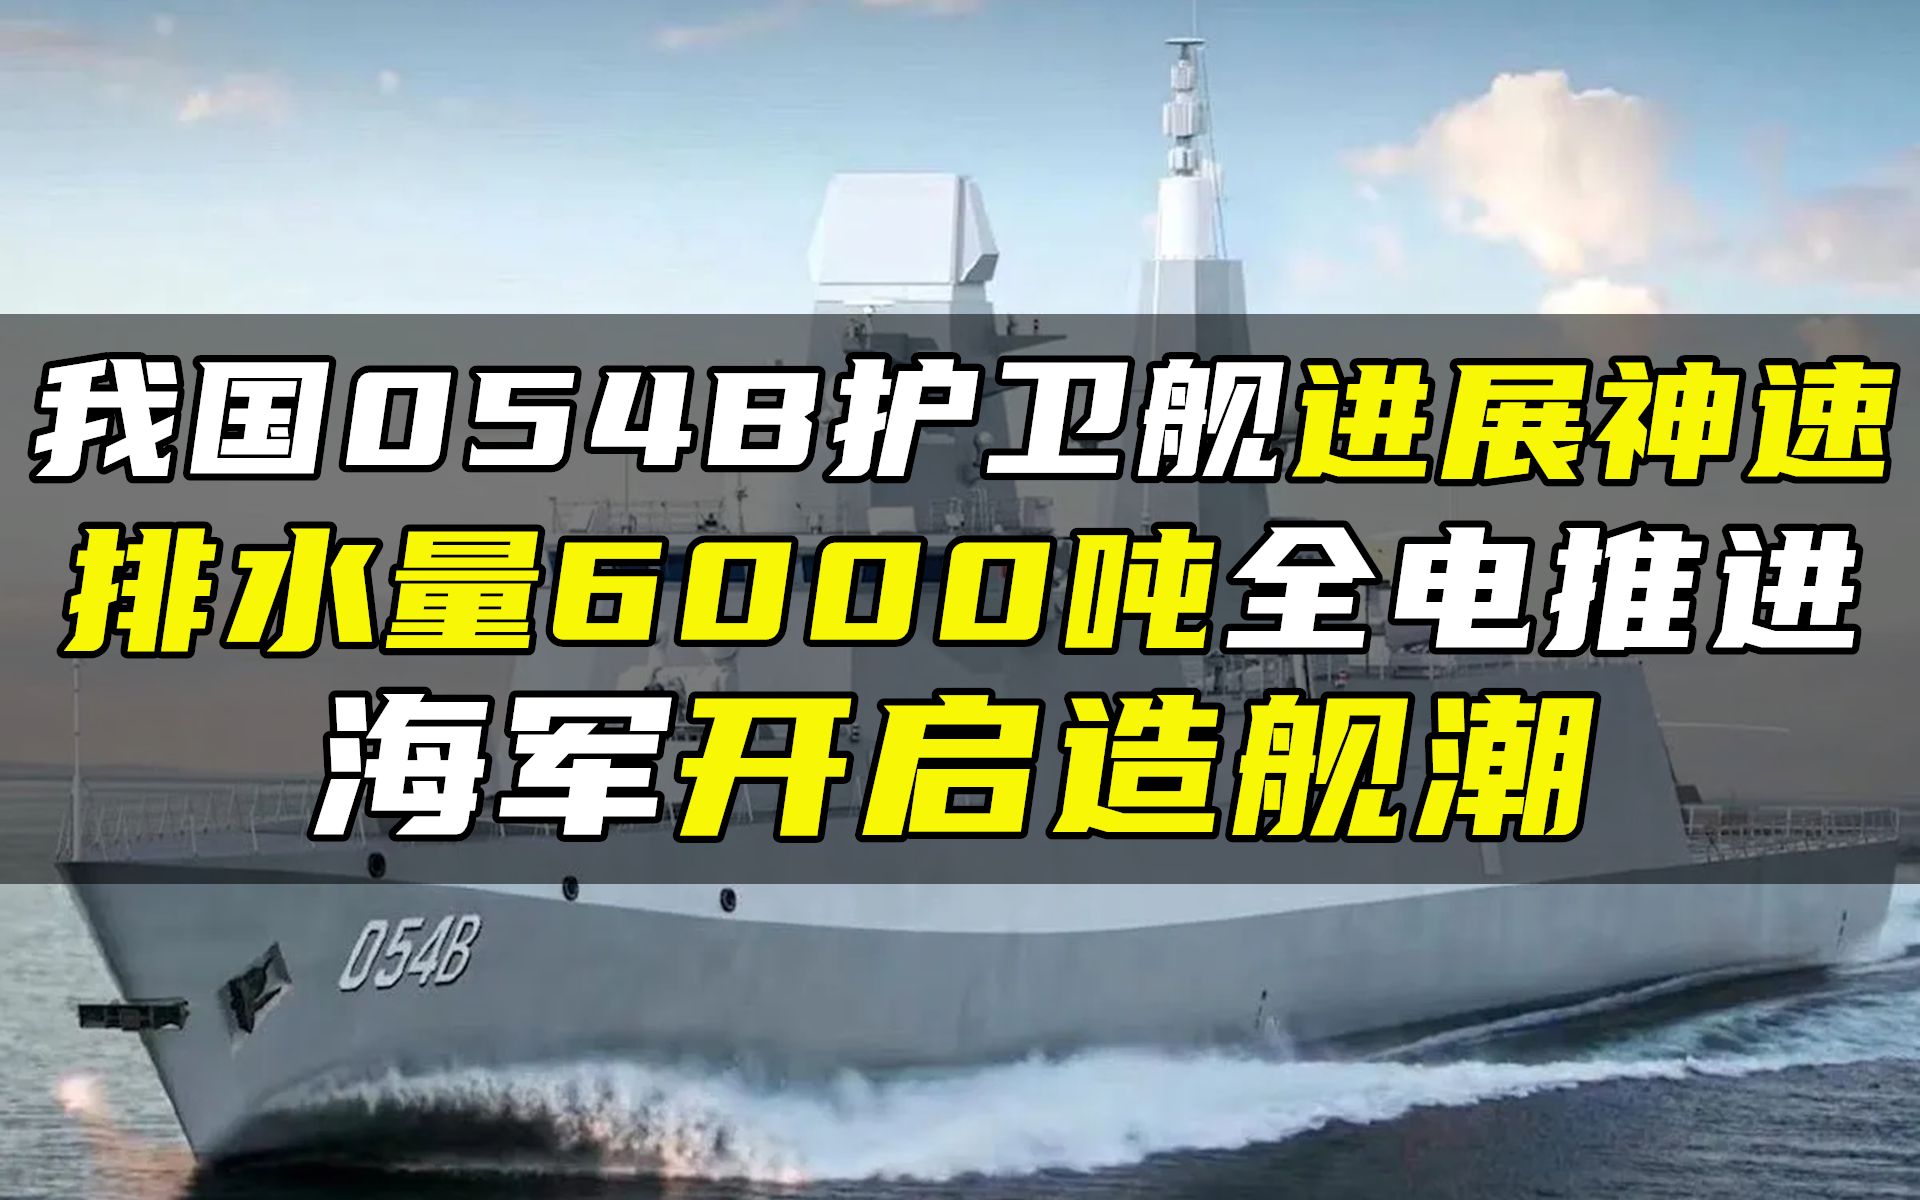 003福建舰8万余吨的排水量到底余了多少吨？ - 知乎